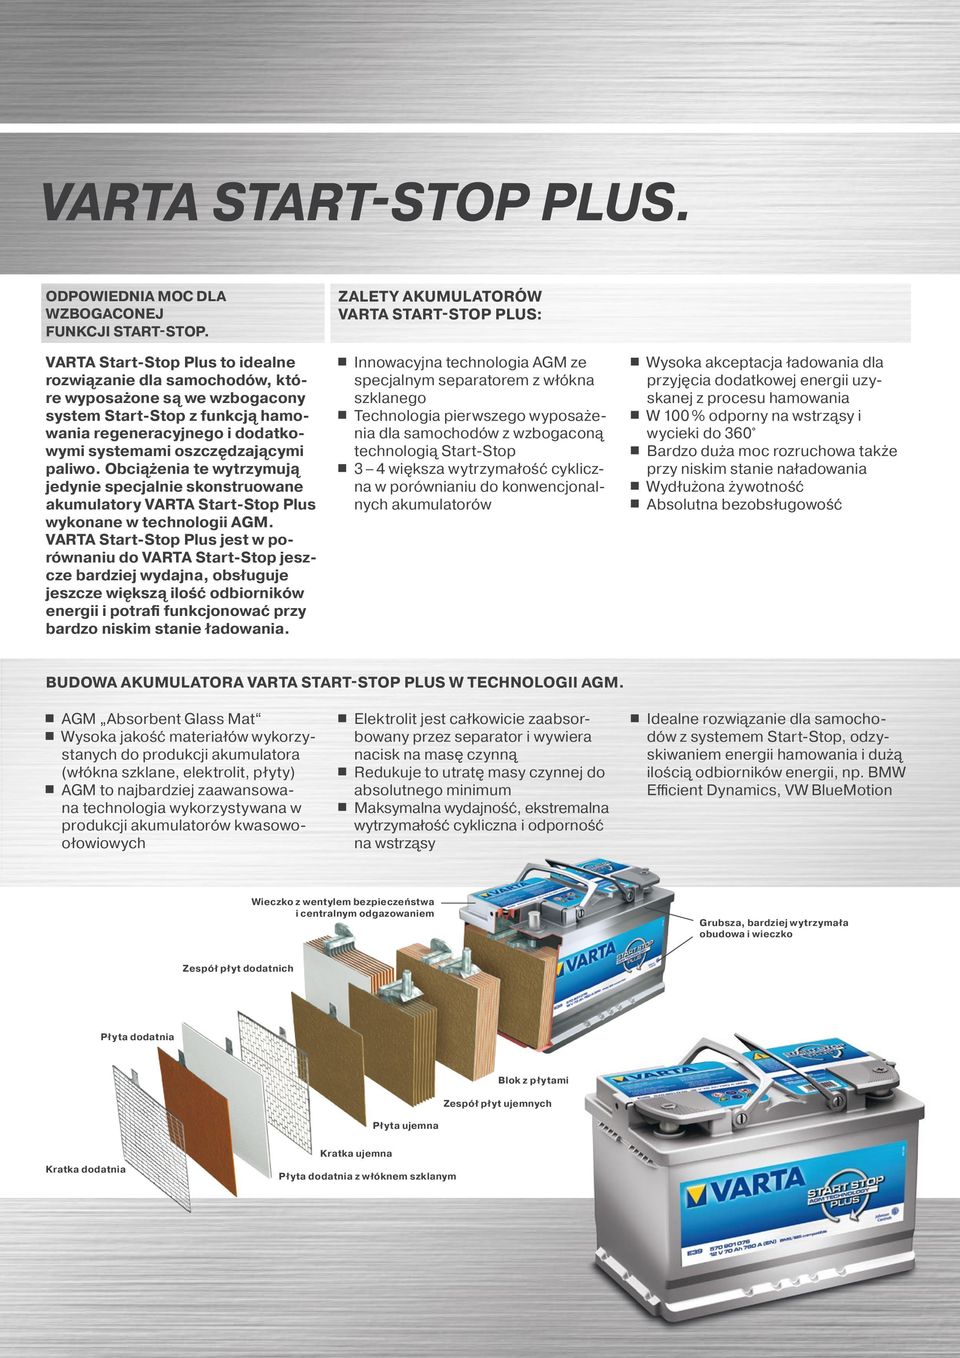 Obciążenia te wytrzymują jedynie specjalnie skonstruowane akumulatory VARTA Start-Stop Plus wykonane w technologii AGM.